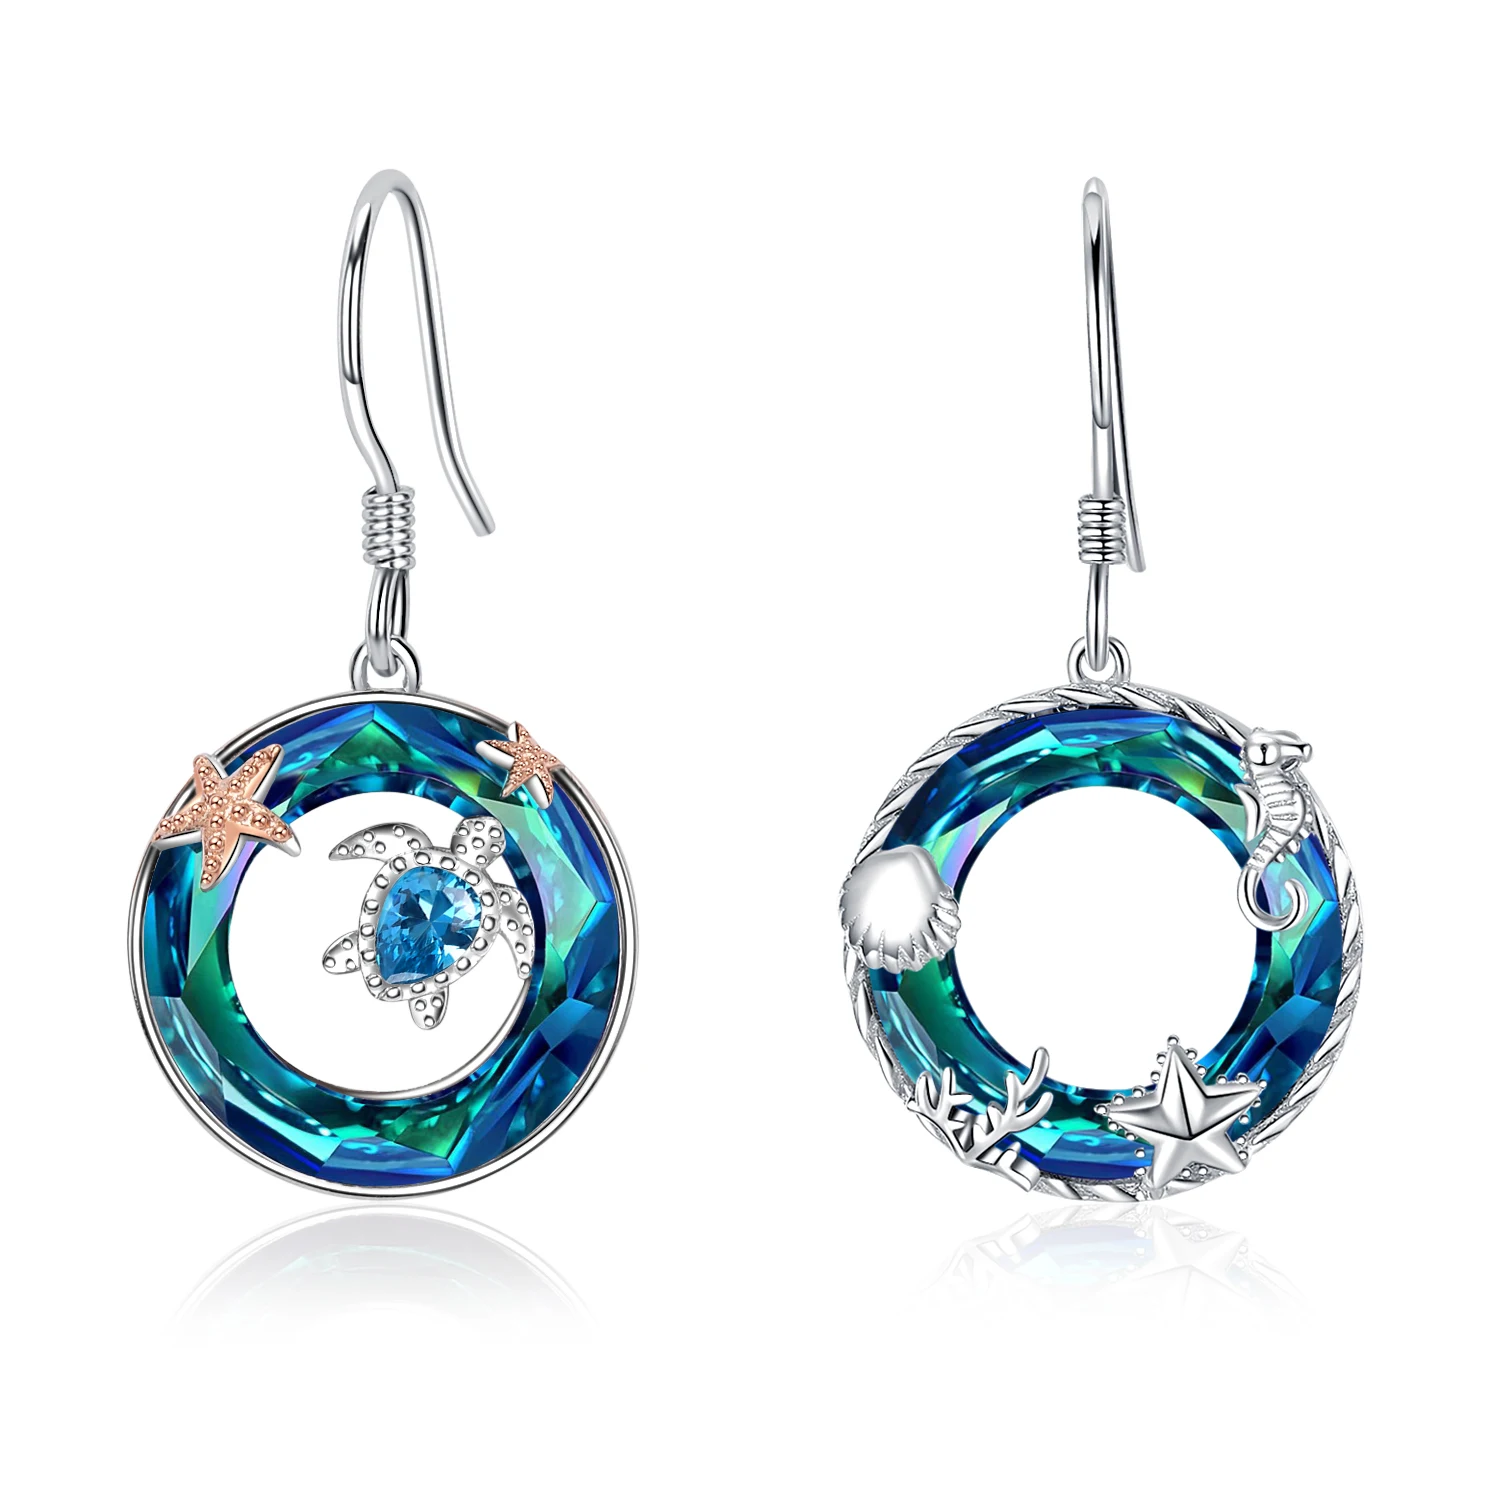 

Slovehoony Ocean Sea Turtle Starfish Earrings 925 Sterling Silver Luxury Jewelry Blue Crystal Drop Earrings